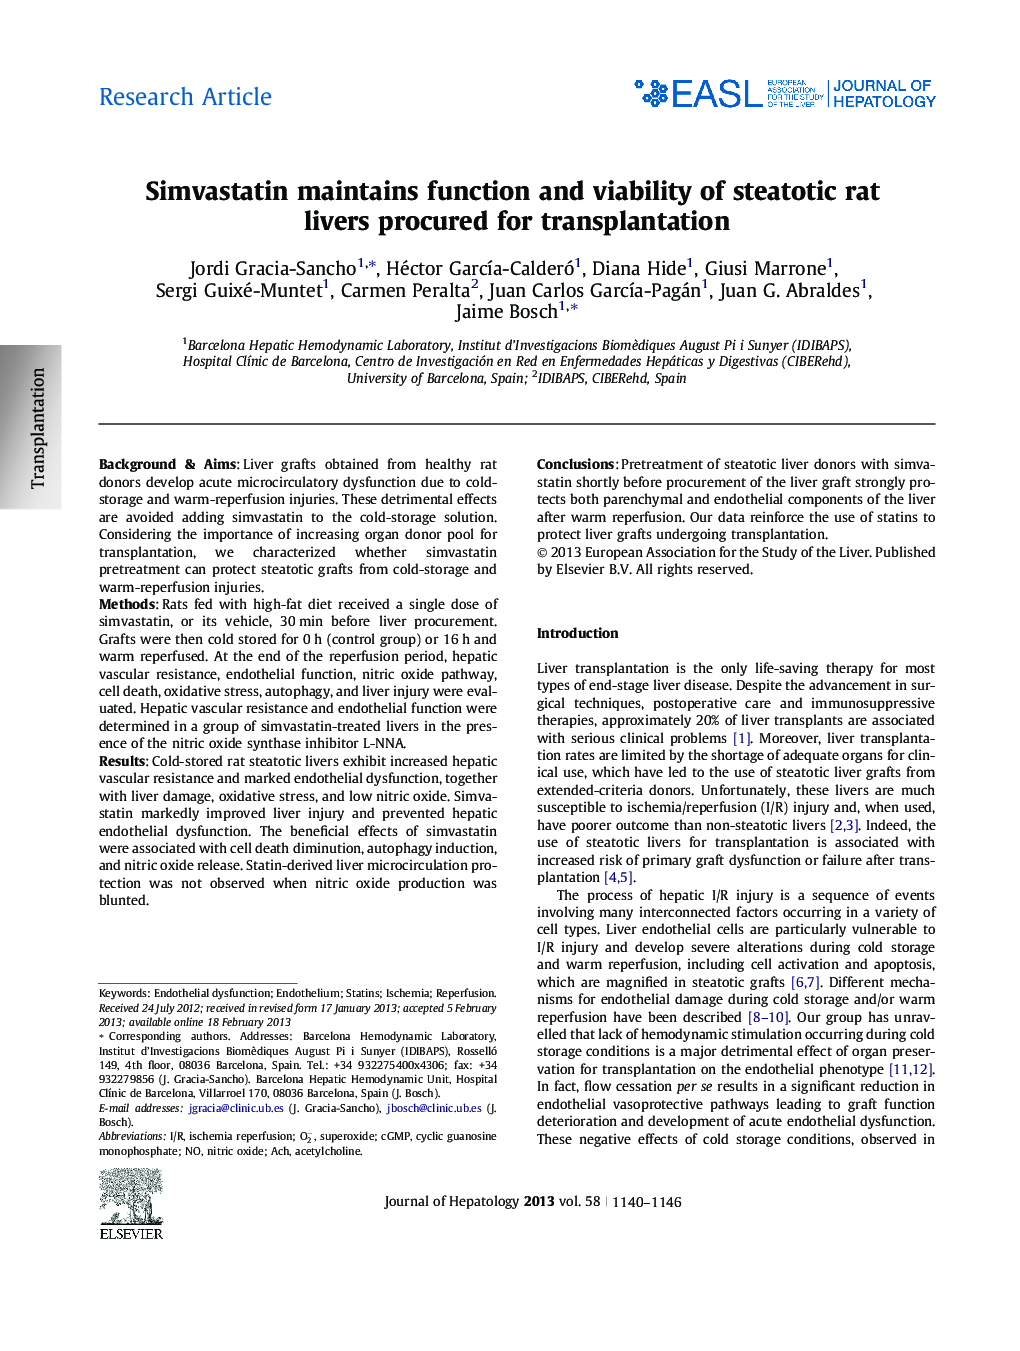 مقاله پژوهشی: سموواستاتین عملکرد و زنده ماندن پروتئین های موش صحرایی را برای پروتئین تامین می کند 